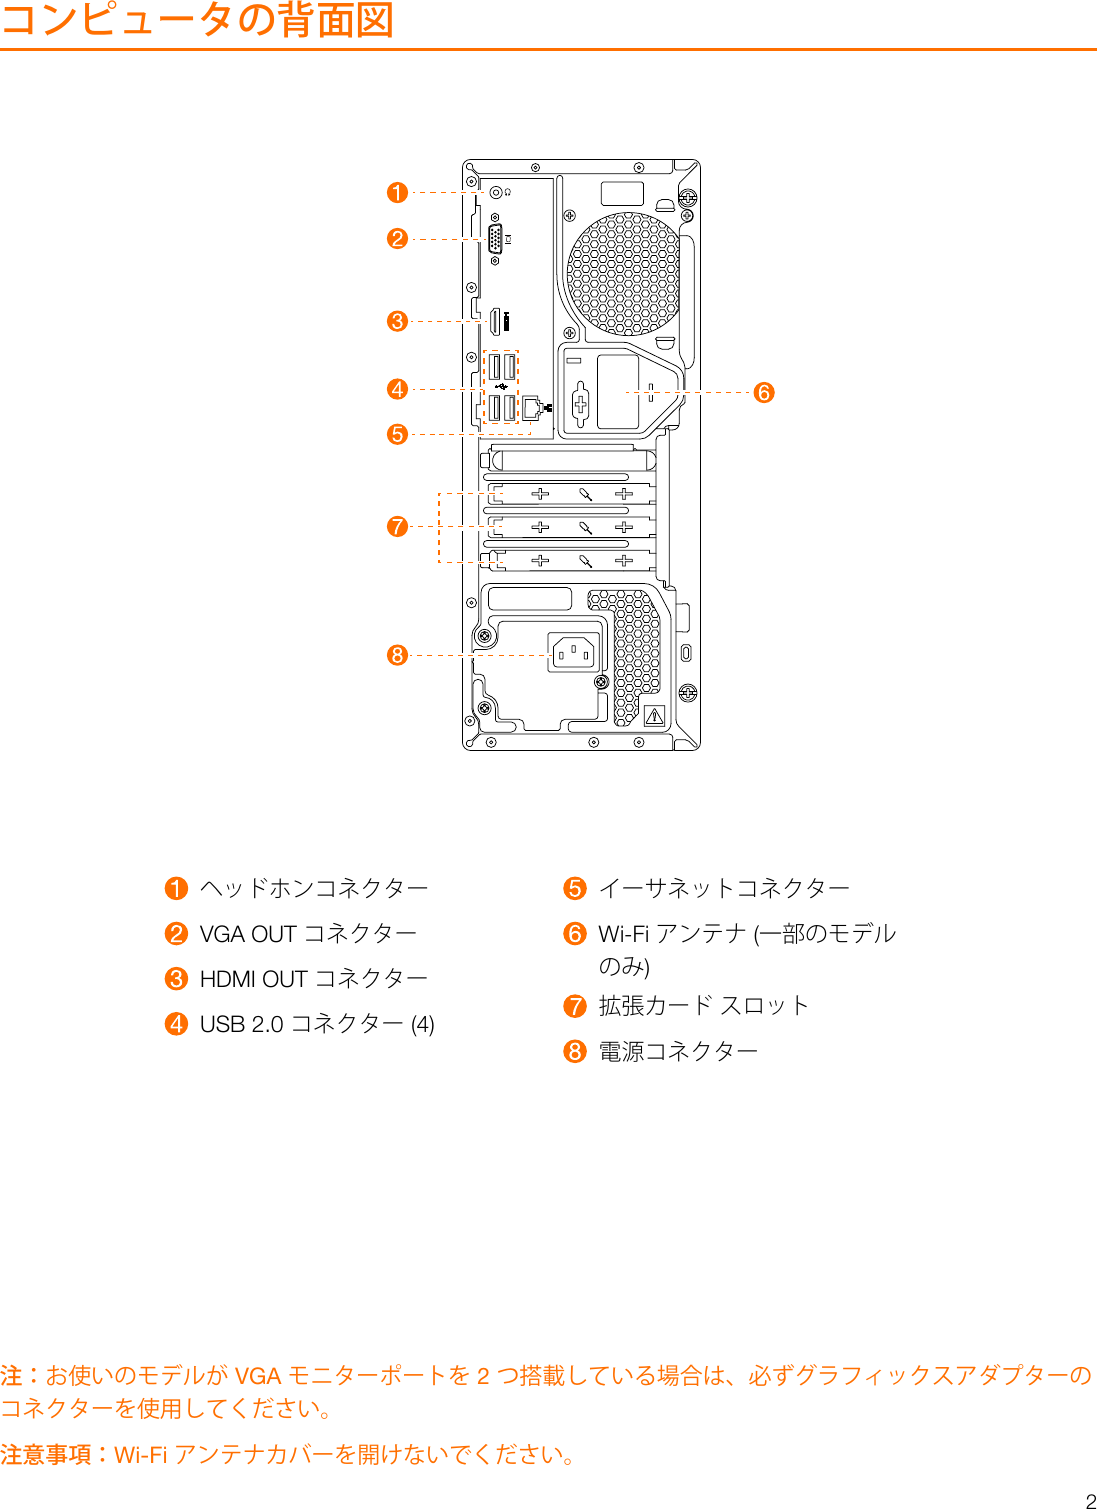 Page 3 of 8 - Lenovo  ユーザー・ガイド 510A-15ICB Desktop (ideacentre) - Type 90HV 510 510a Ug V1.0 Jp 20180509